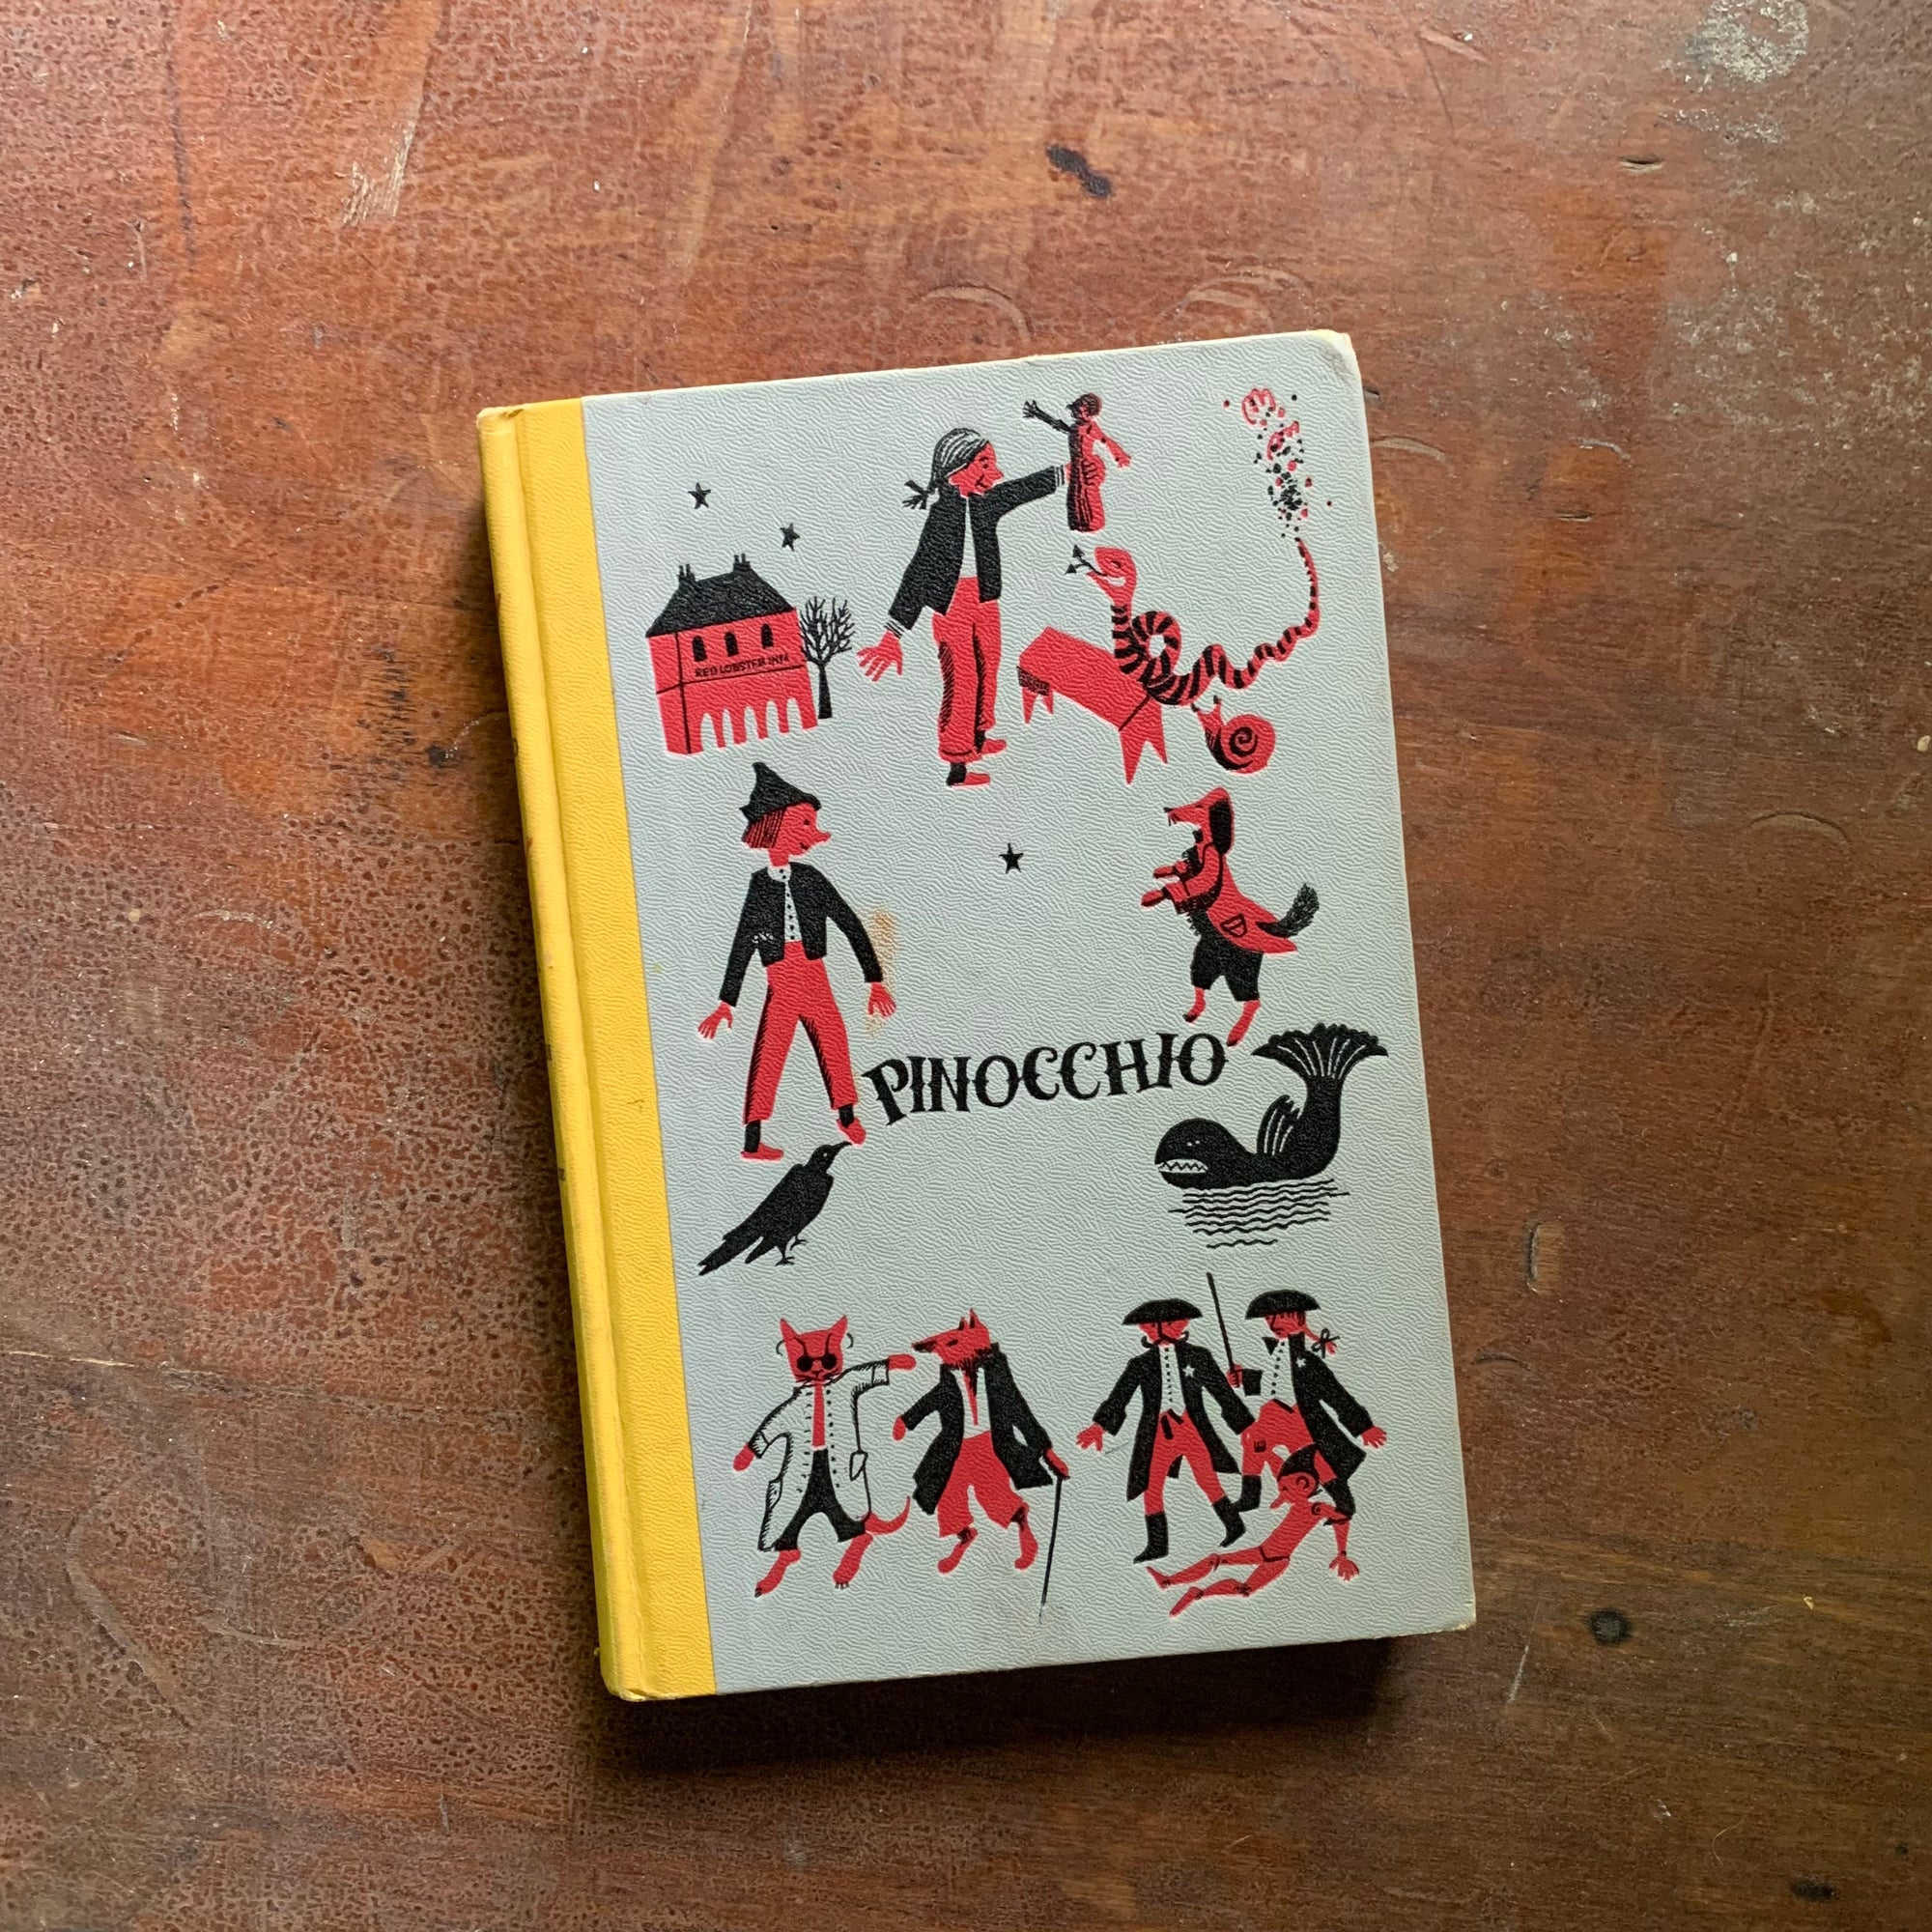 Pinocchio - A 1955 Junior Deluxe Editions Children's Book - Cover